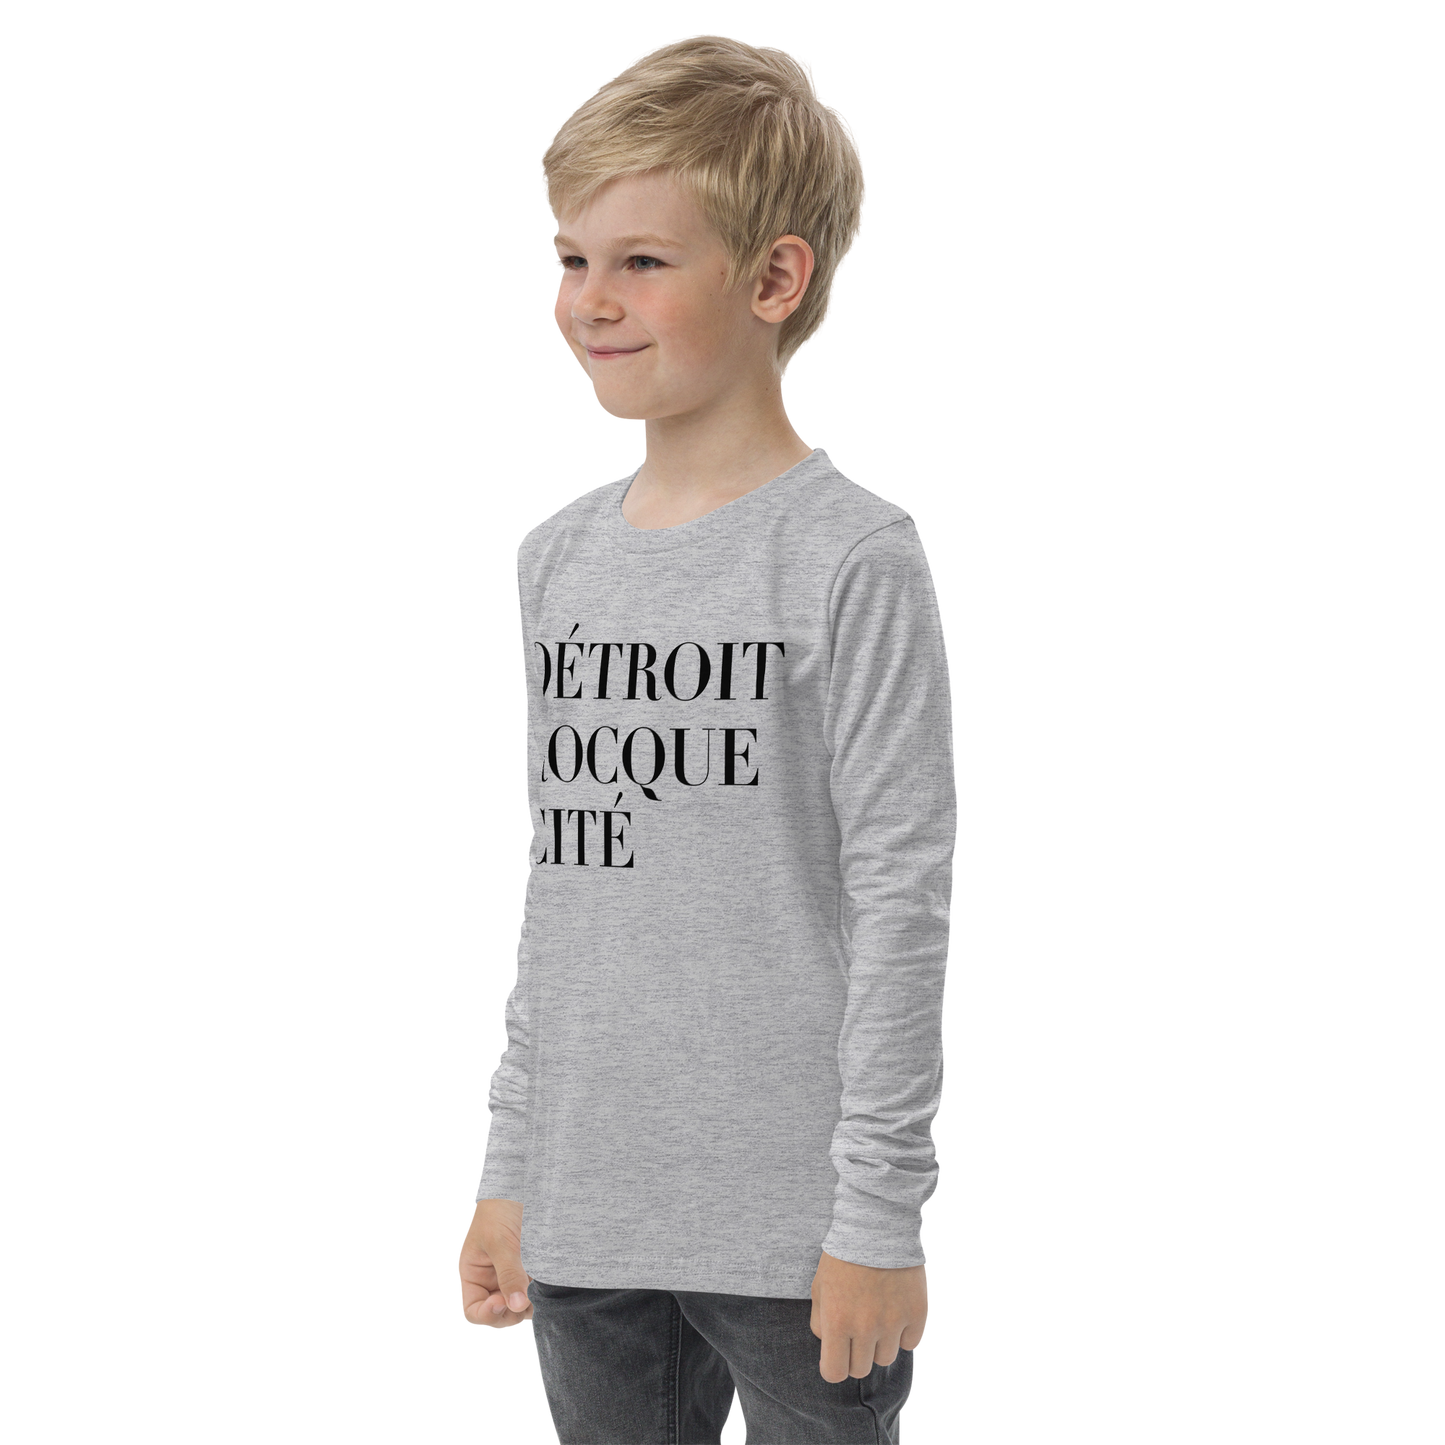 'Détroit Rocque Cité' T-Shirt | Youth Long Sleeve